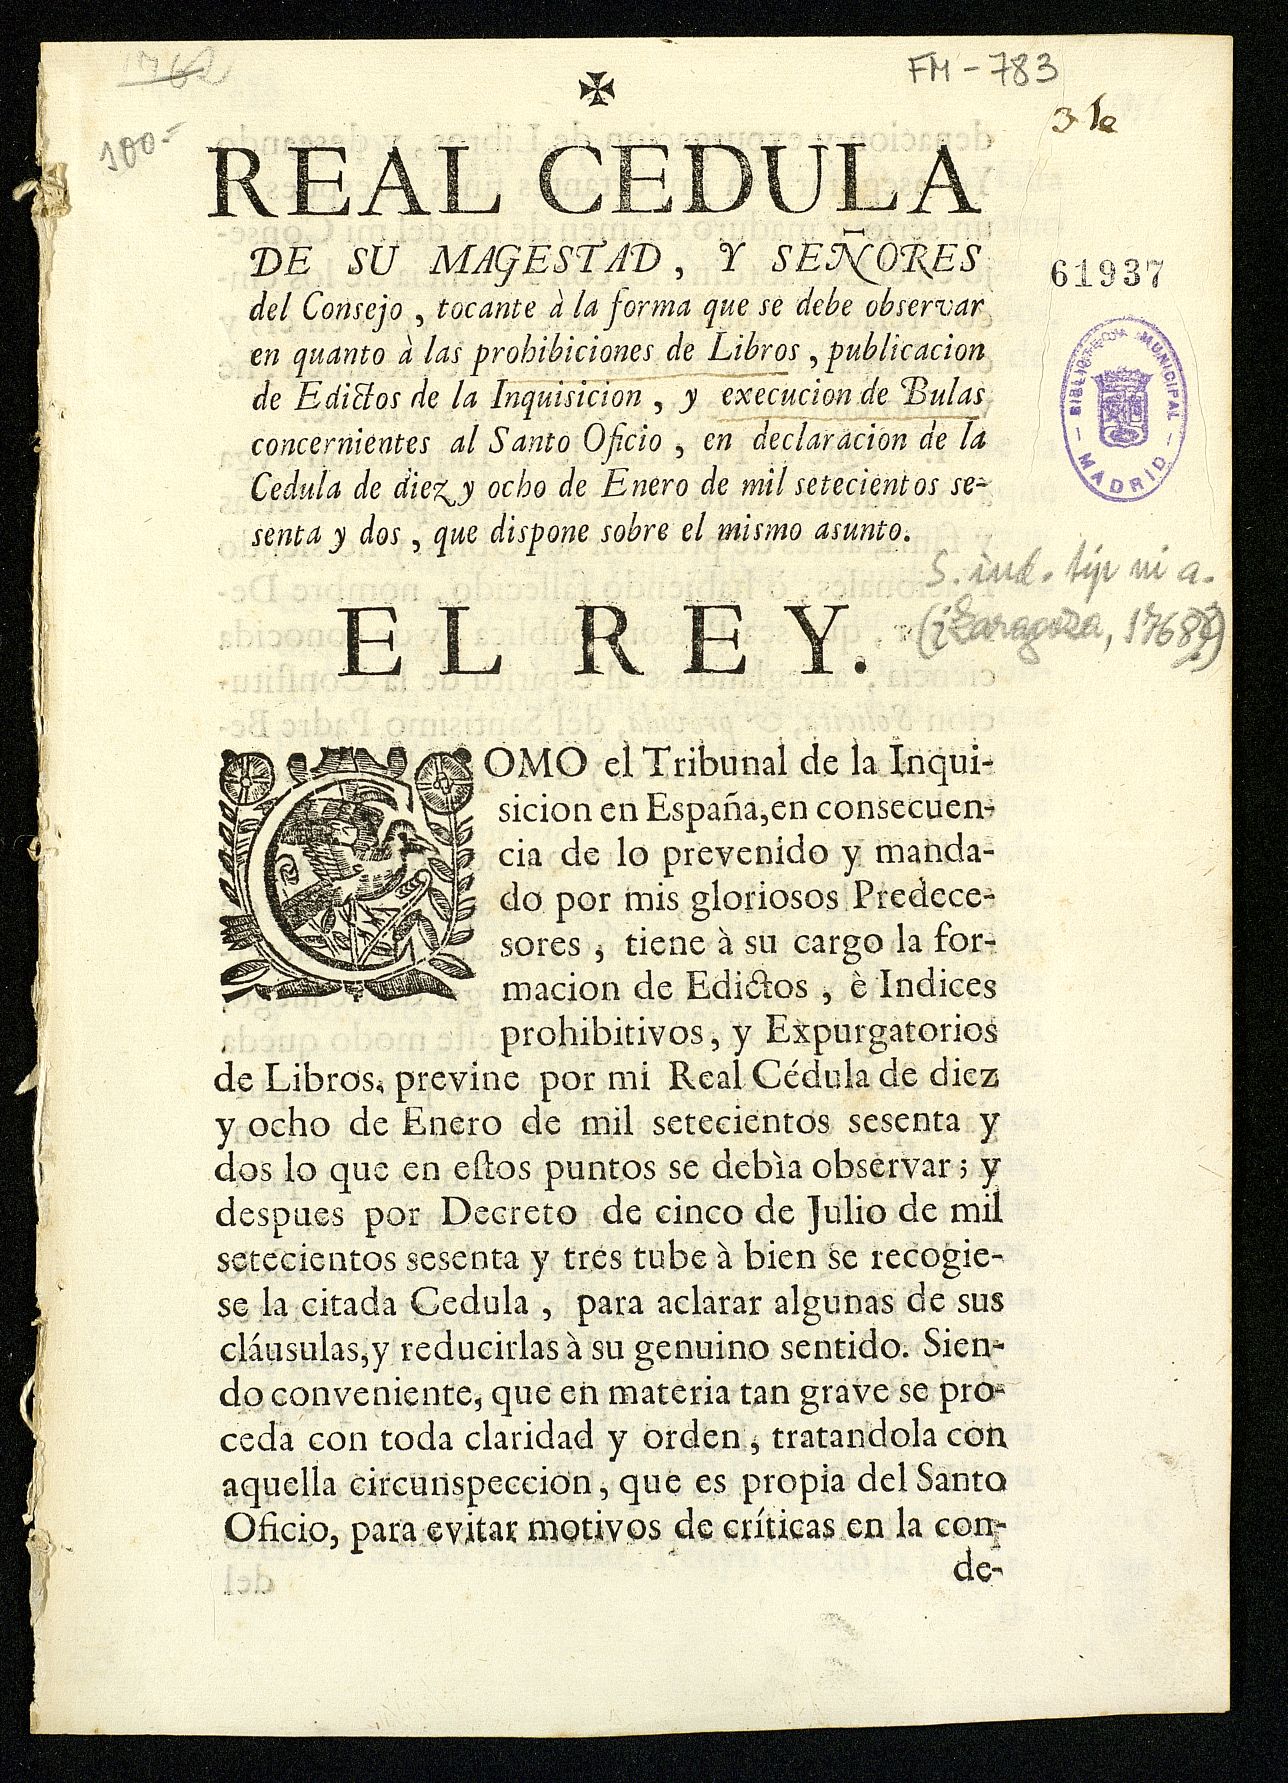 Real Cédula de Carlos III sobre Inquisición y Censura de libros